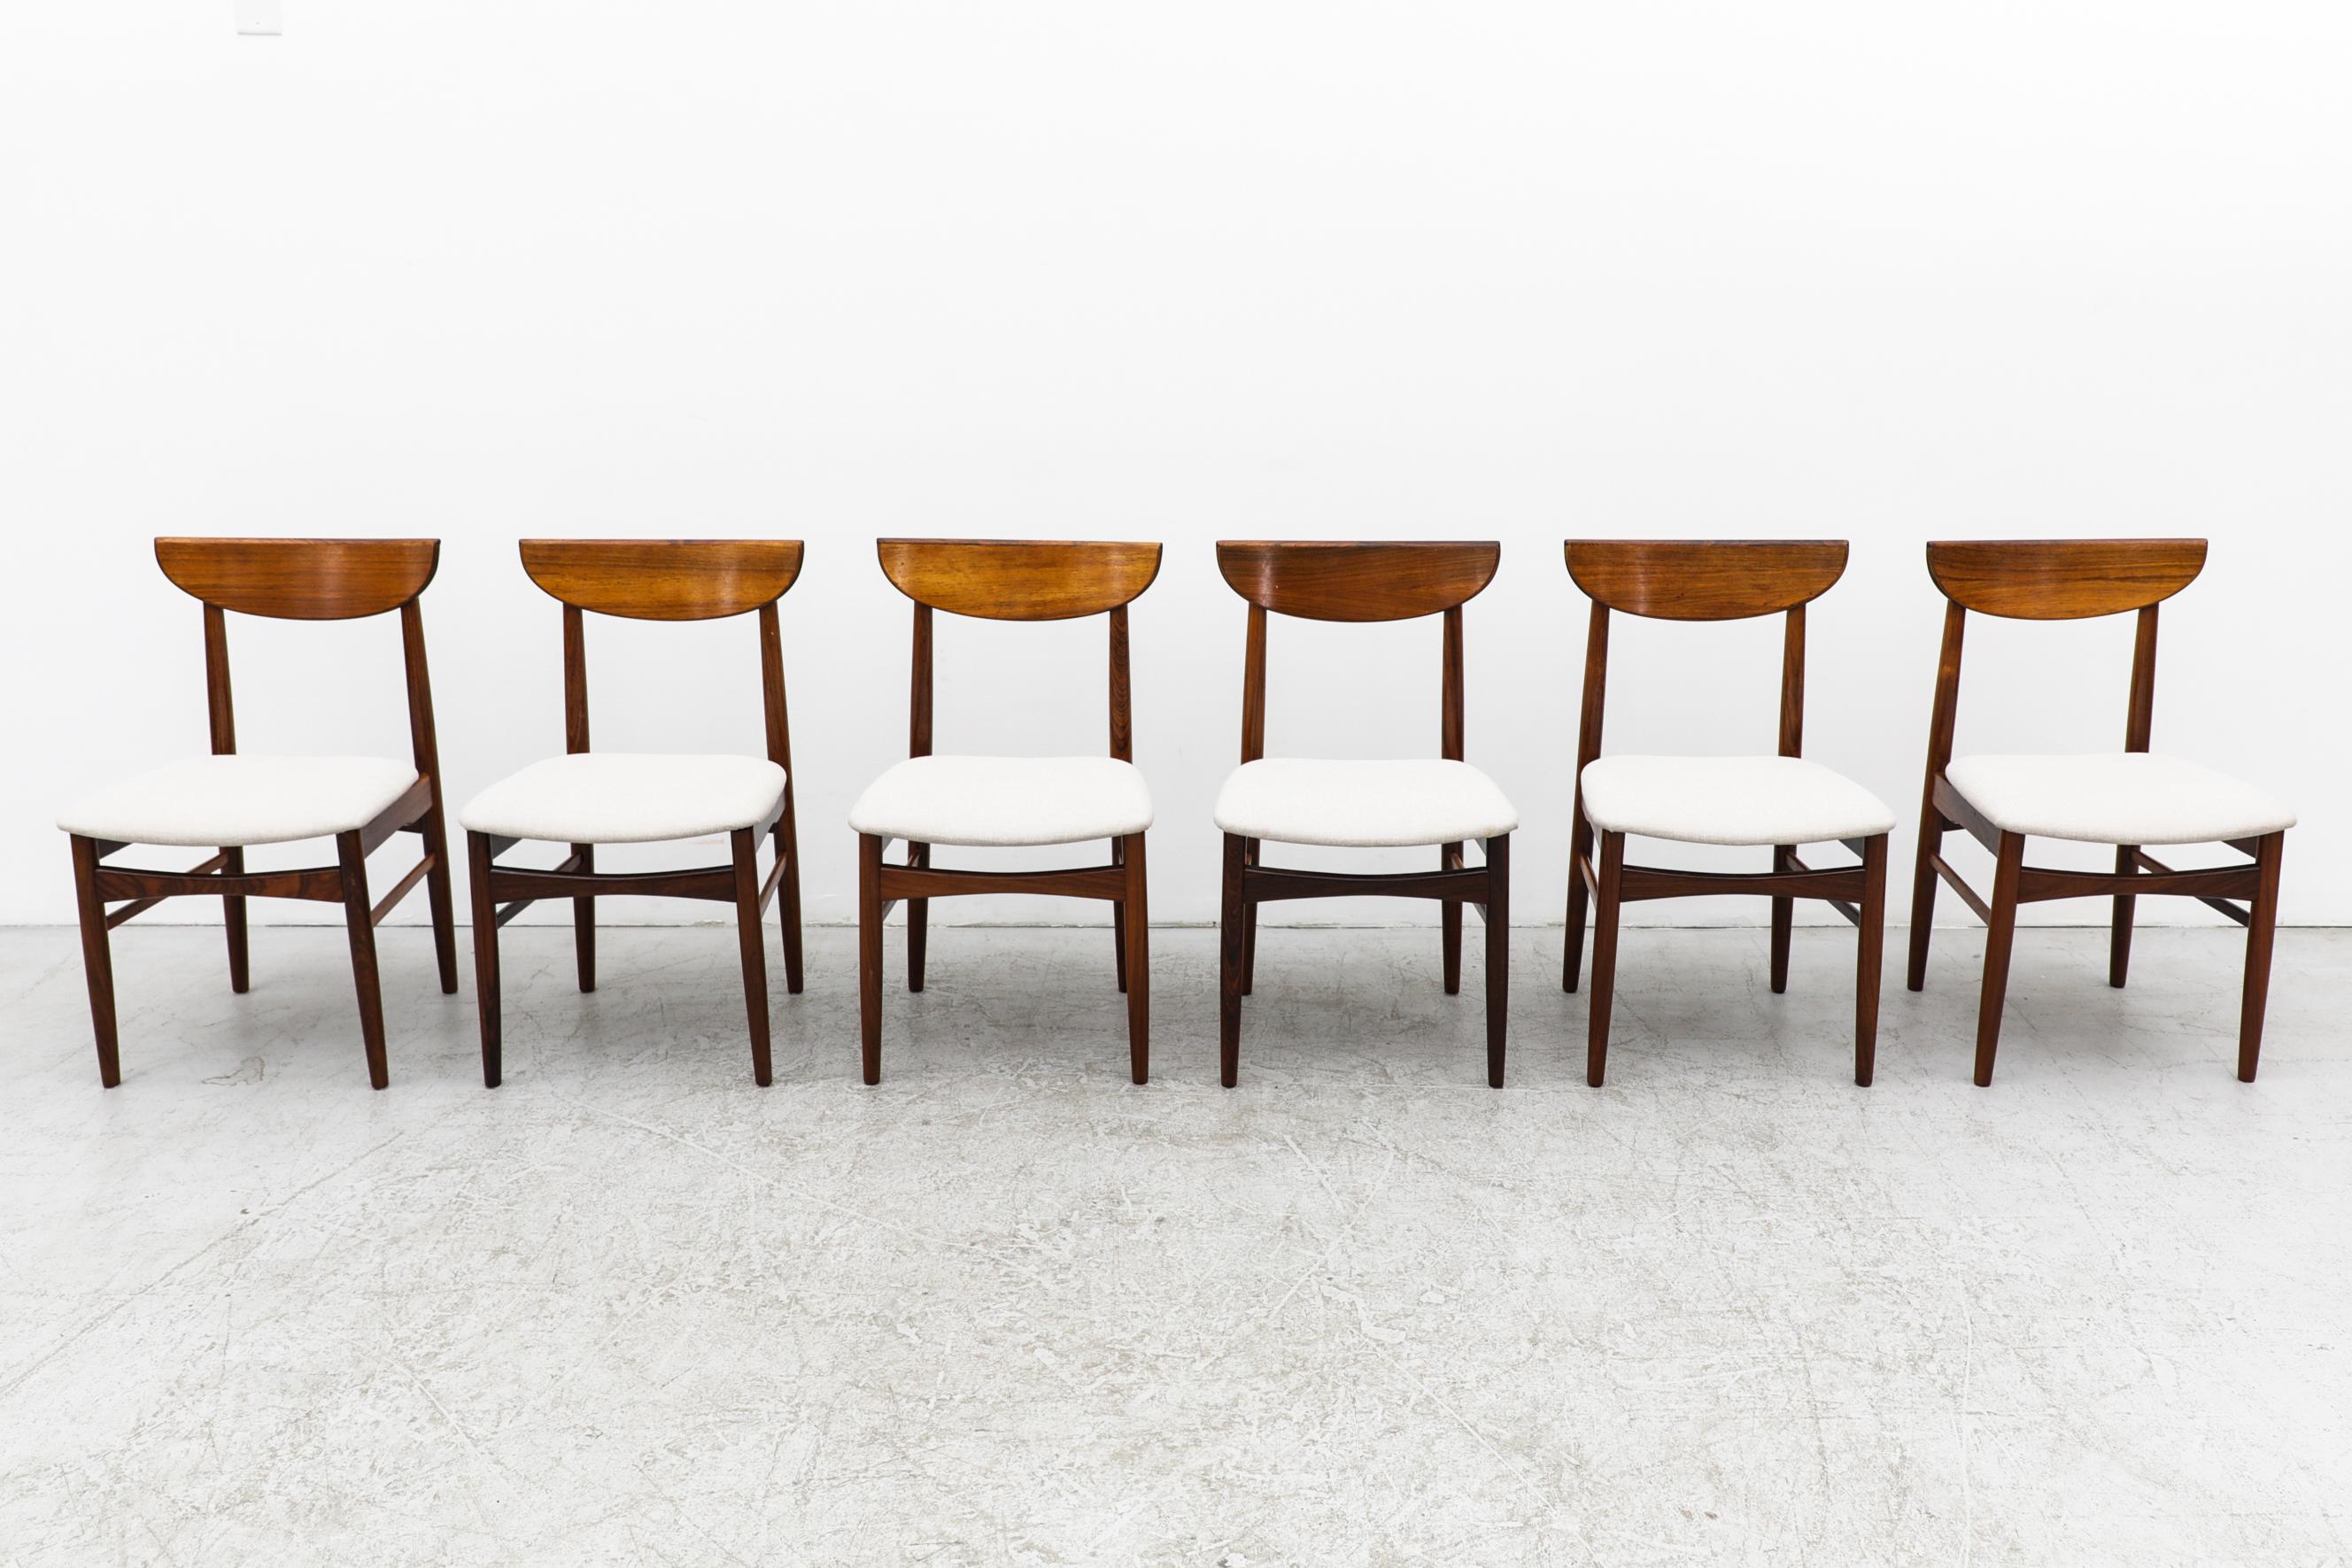 Ensemble de 6 chaises de salle à manger en bois de rose avec dossier en demi-lune et assise tapissée en blanc d'os. Conçu par le designer danois Kurt Østervig. En état d'origine avec quelques rayures visibles sur les cadres. L'usure est conforme à